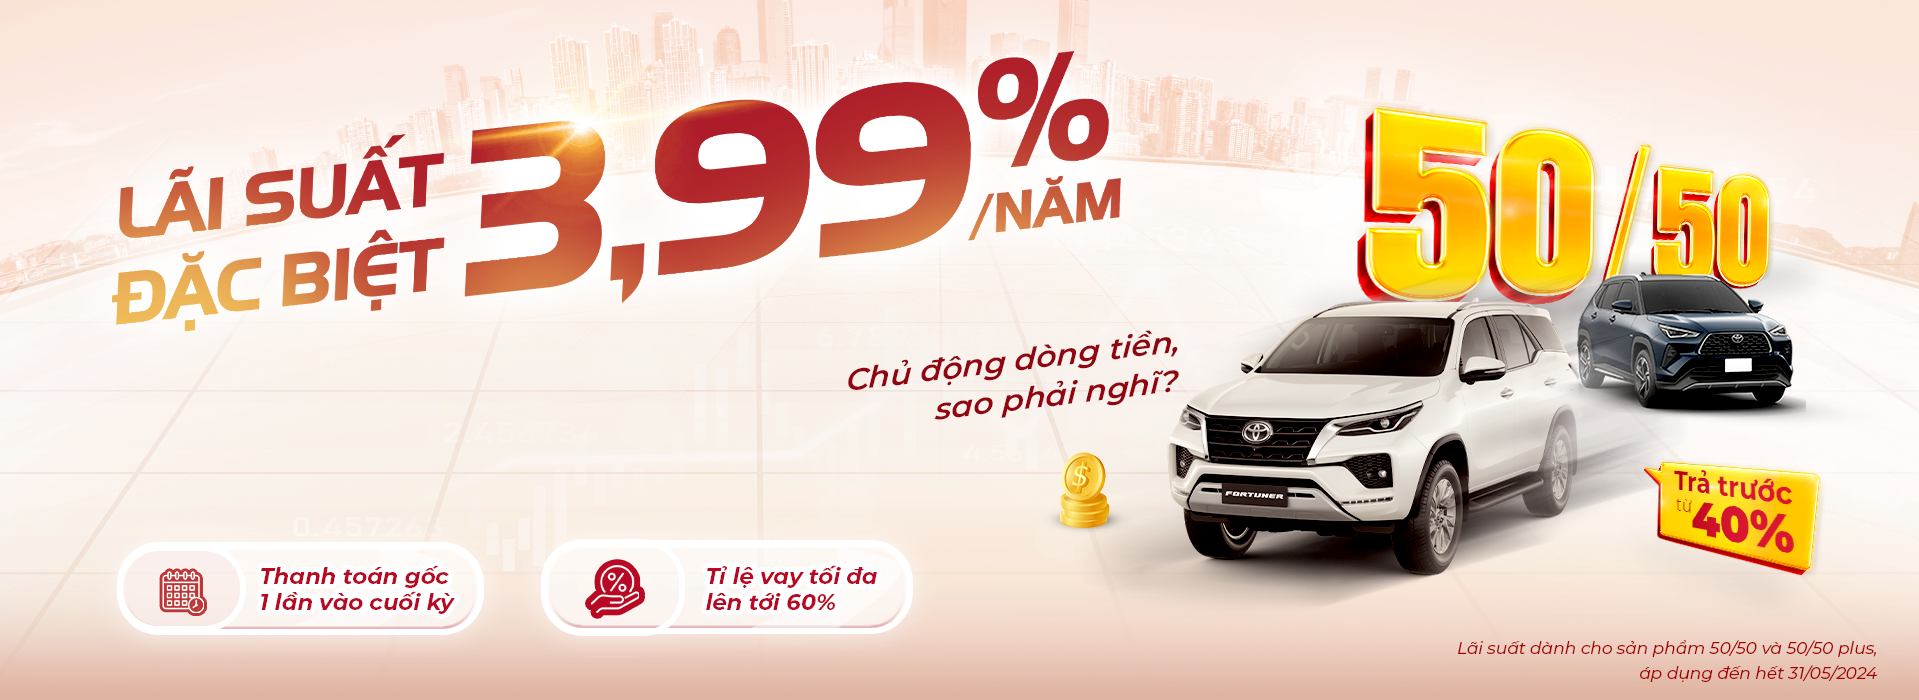 Ưu Đãi Lãi Suất Vay Mua Xe Toyota trong tháng 05 dành cho sản phẩm 50/50 và 50/50 Plus